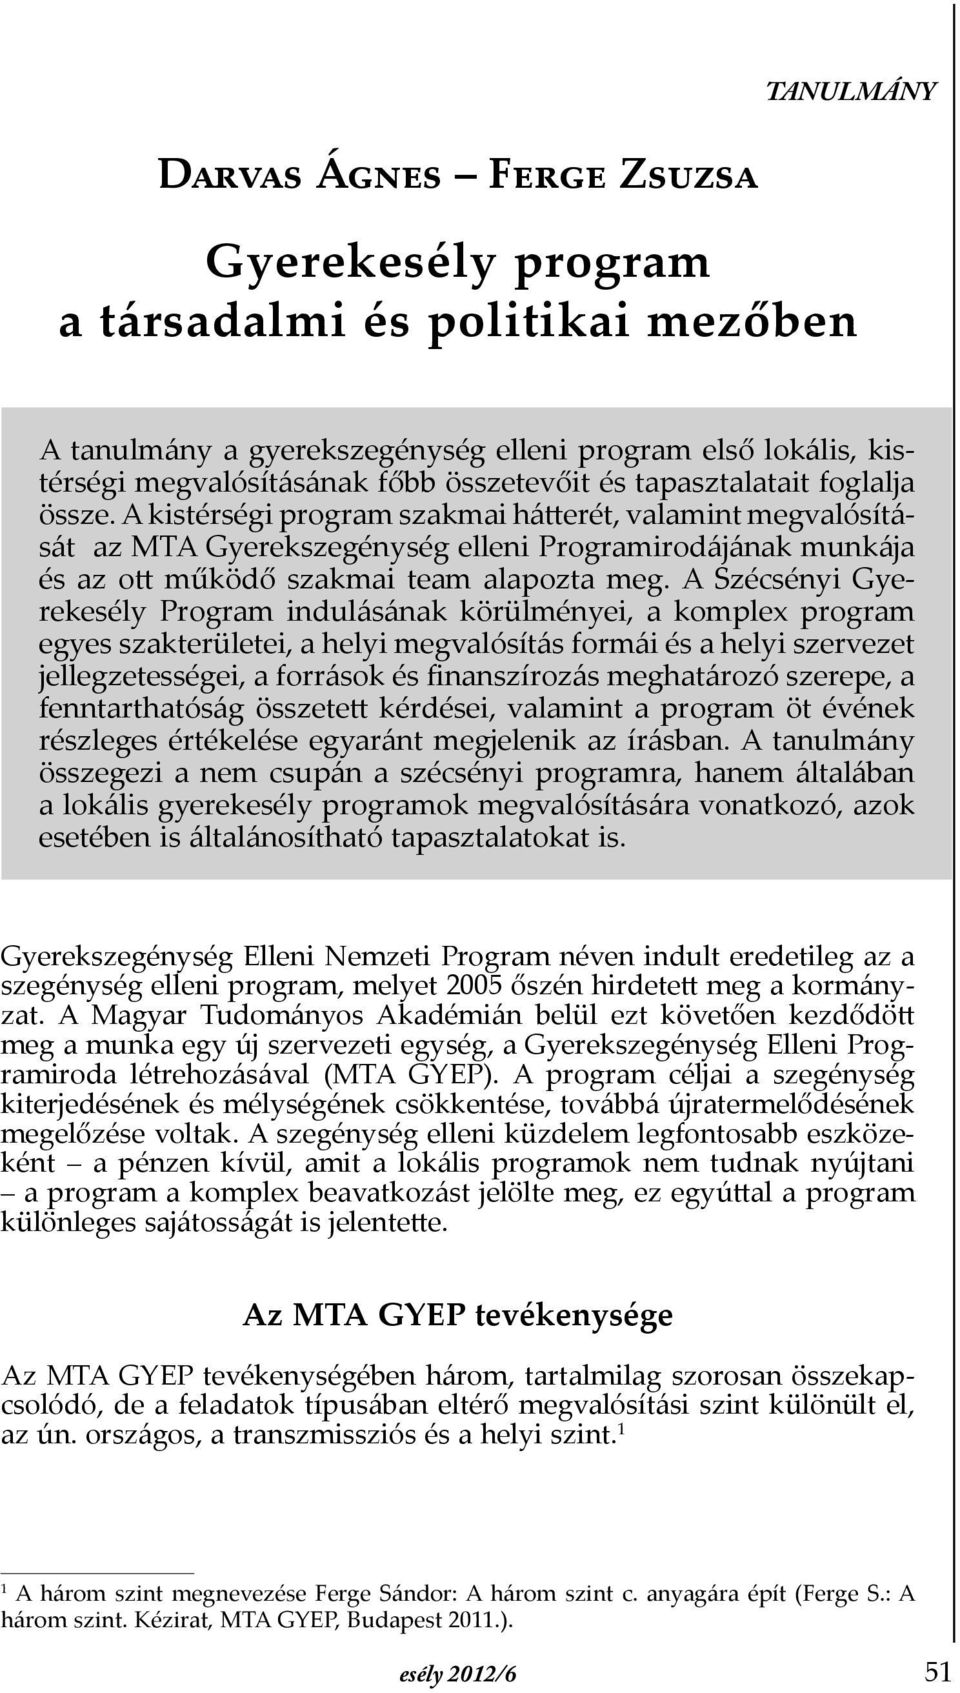 A Szécsényi Gyerekesély Program indulásának körülményei, a komplex program egyes szakterületei, a helyi megvalósítás formái és a helyi szervezet jellegzetességei, a források és Þnanszírozás